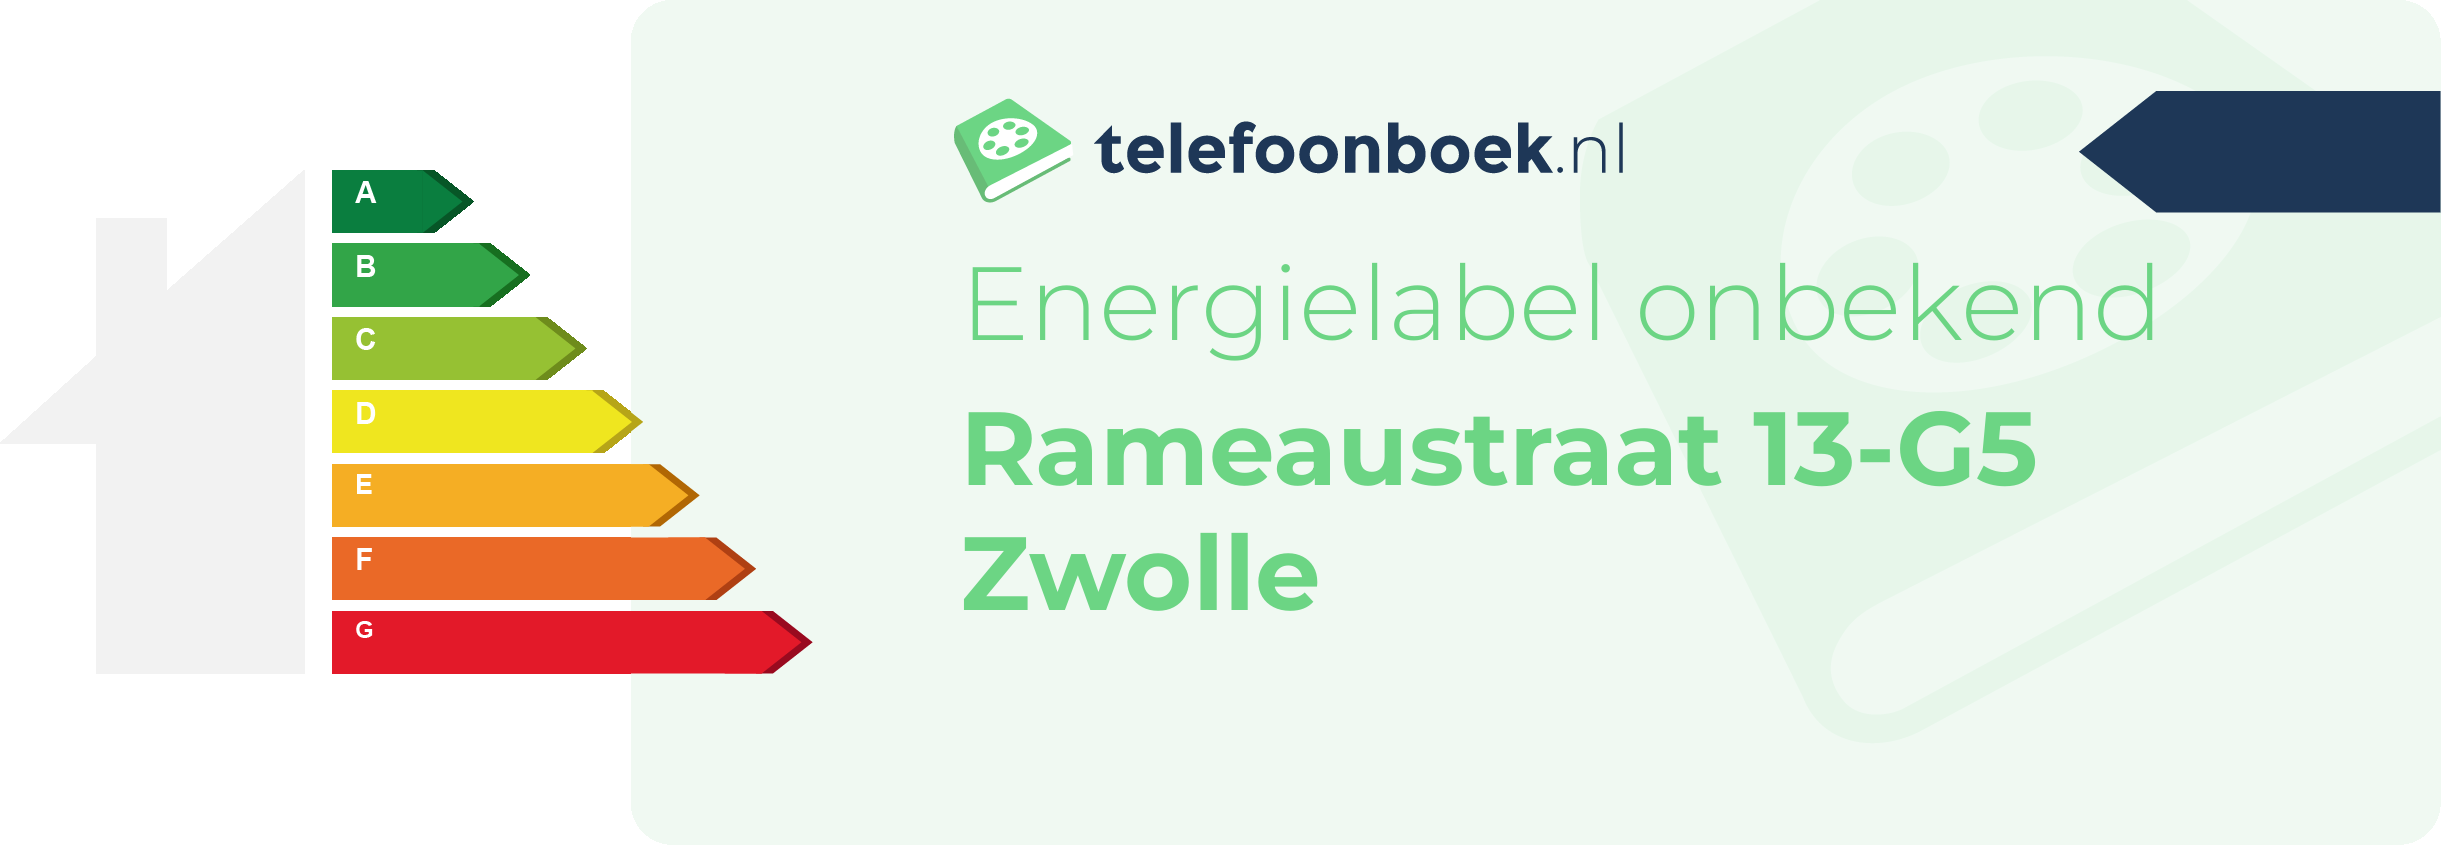 Energielabel Rameaustraat 13-G5 Zwolle